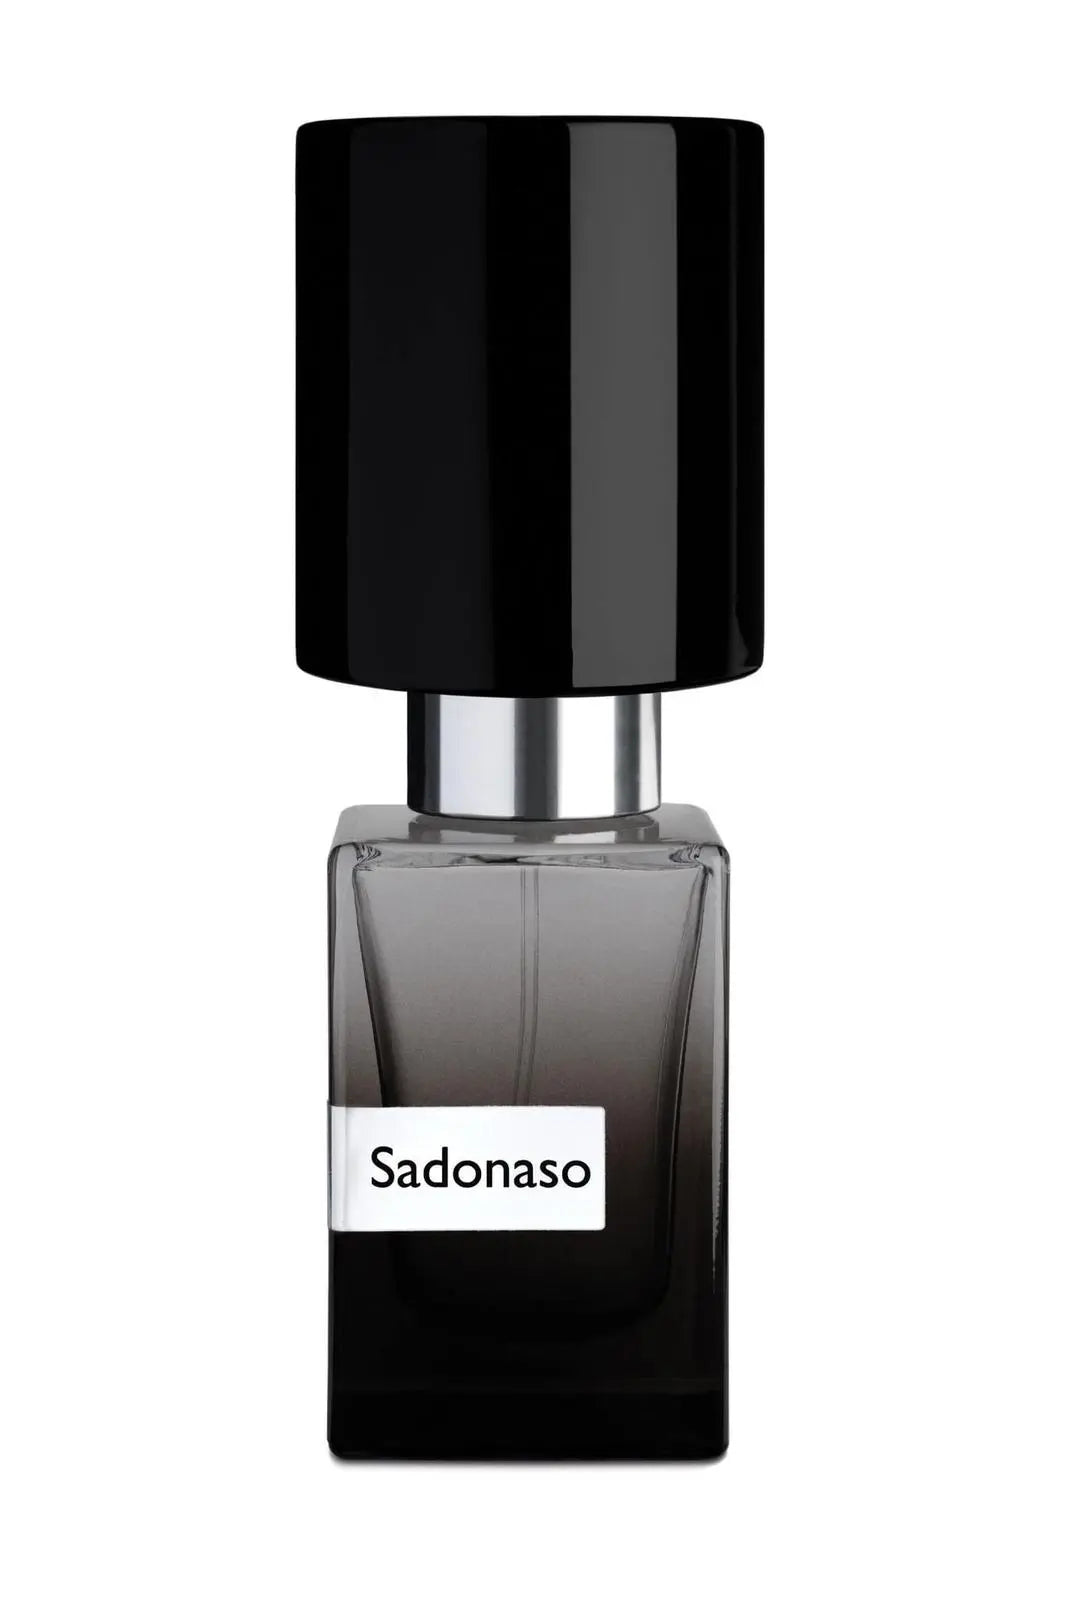 Extracto de perfume SADONASO Nasomatto - 30 ml EDICIÓN LIMITADA (Tapa)